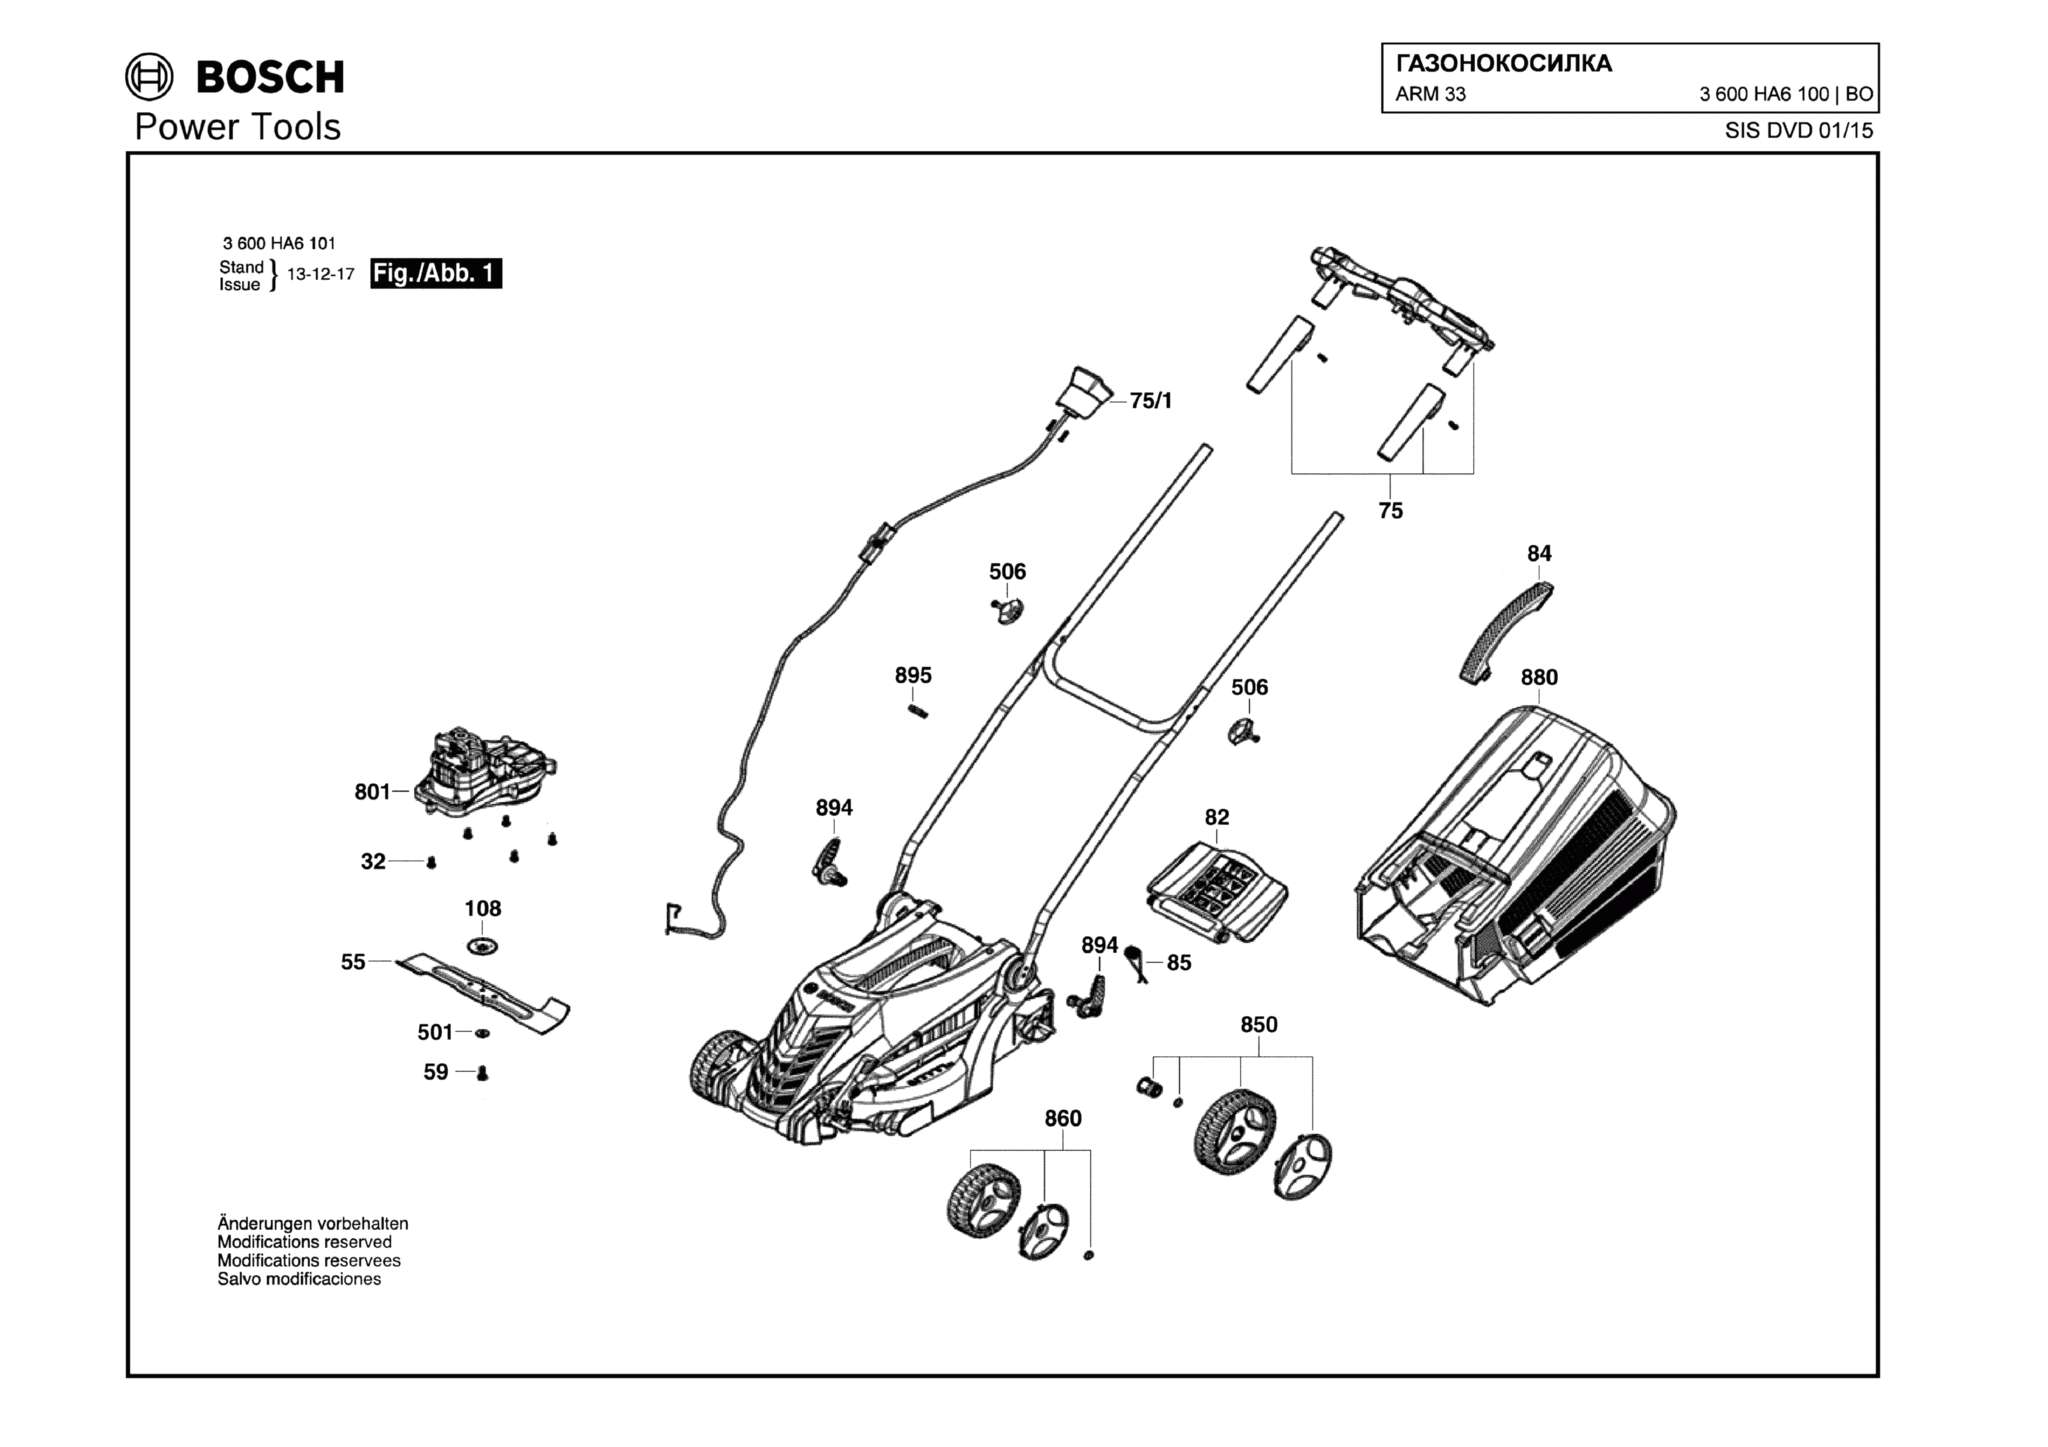 Запчасти, схема и деталировка Bosch ARM 33 (ТИП 3600HA6100)